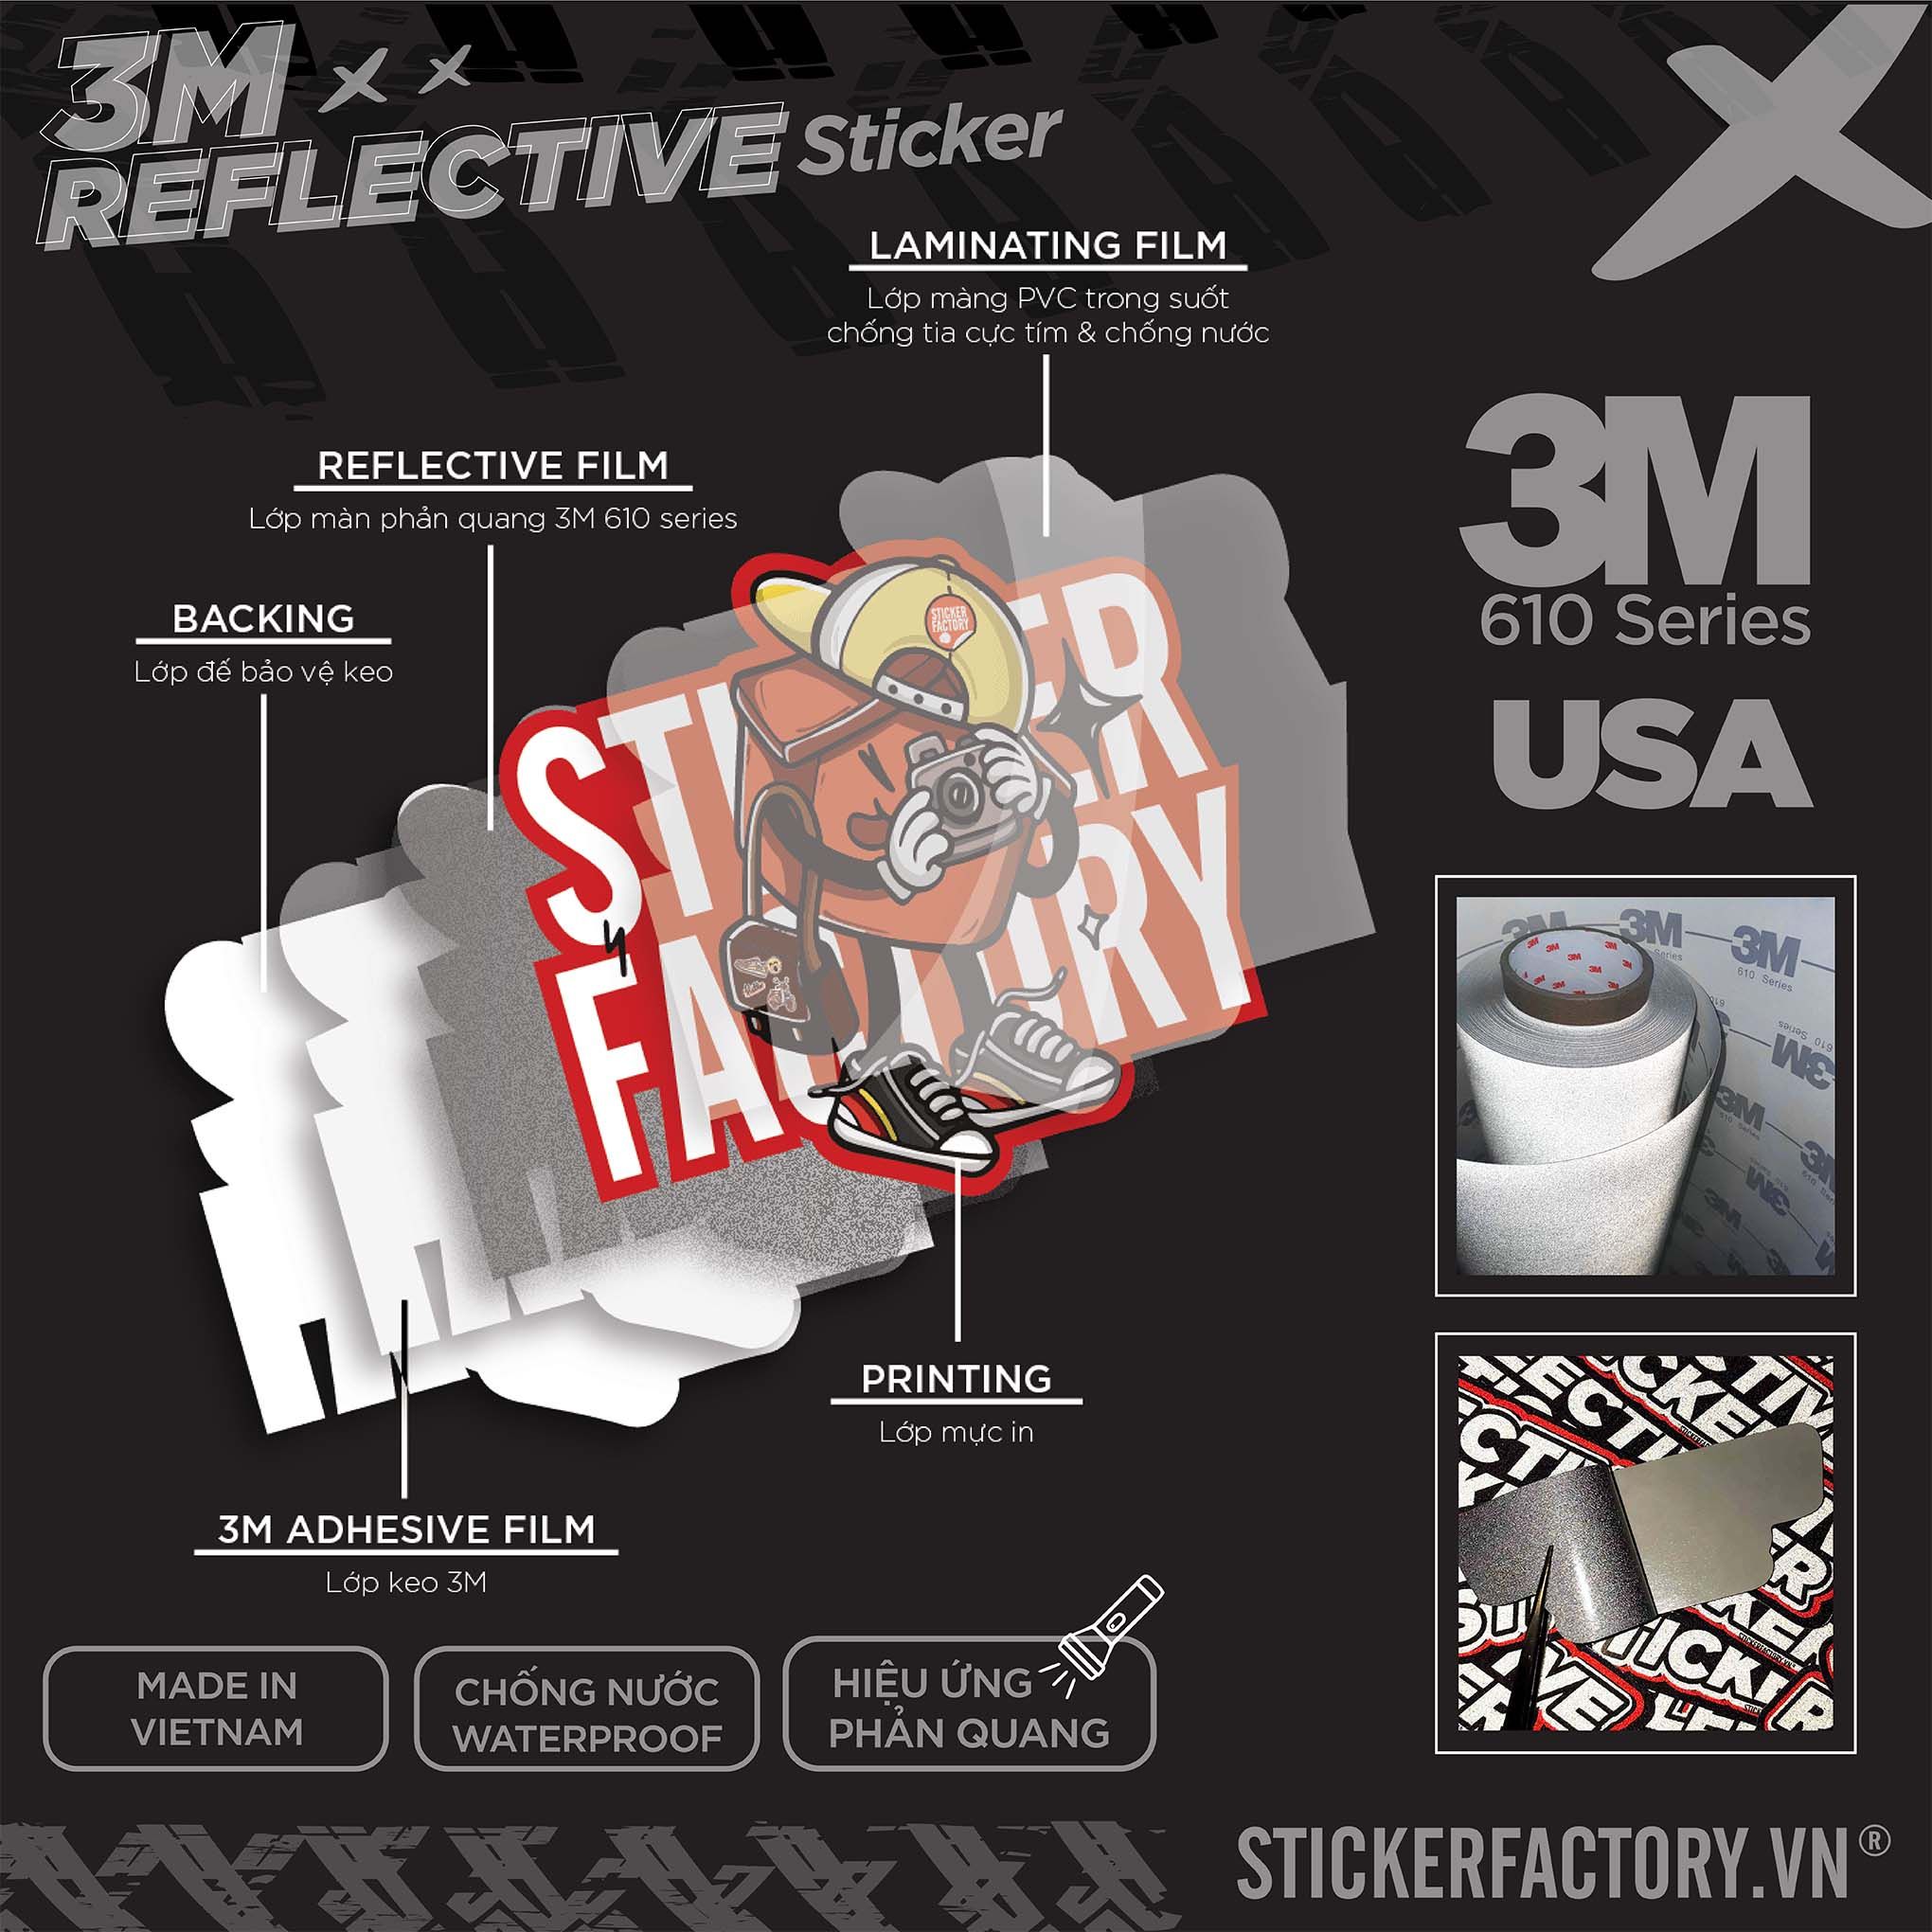 SKELETON MICROPHONE HEART 3M - Reflective Sticker Die-cut